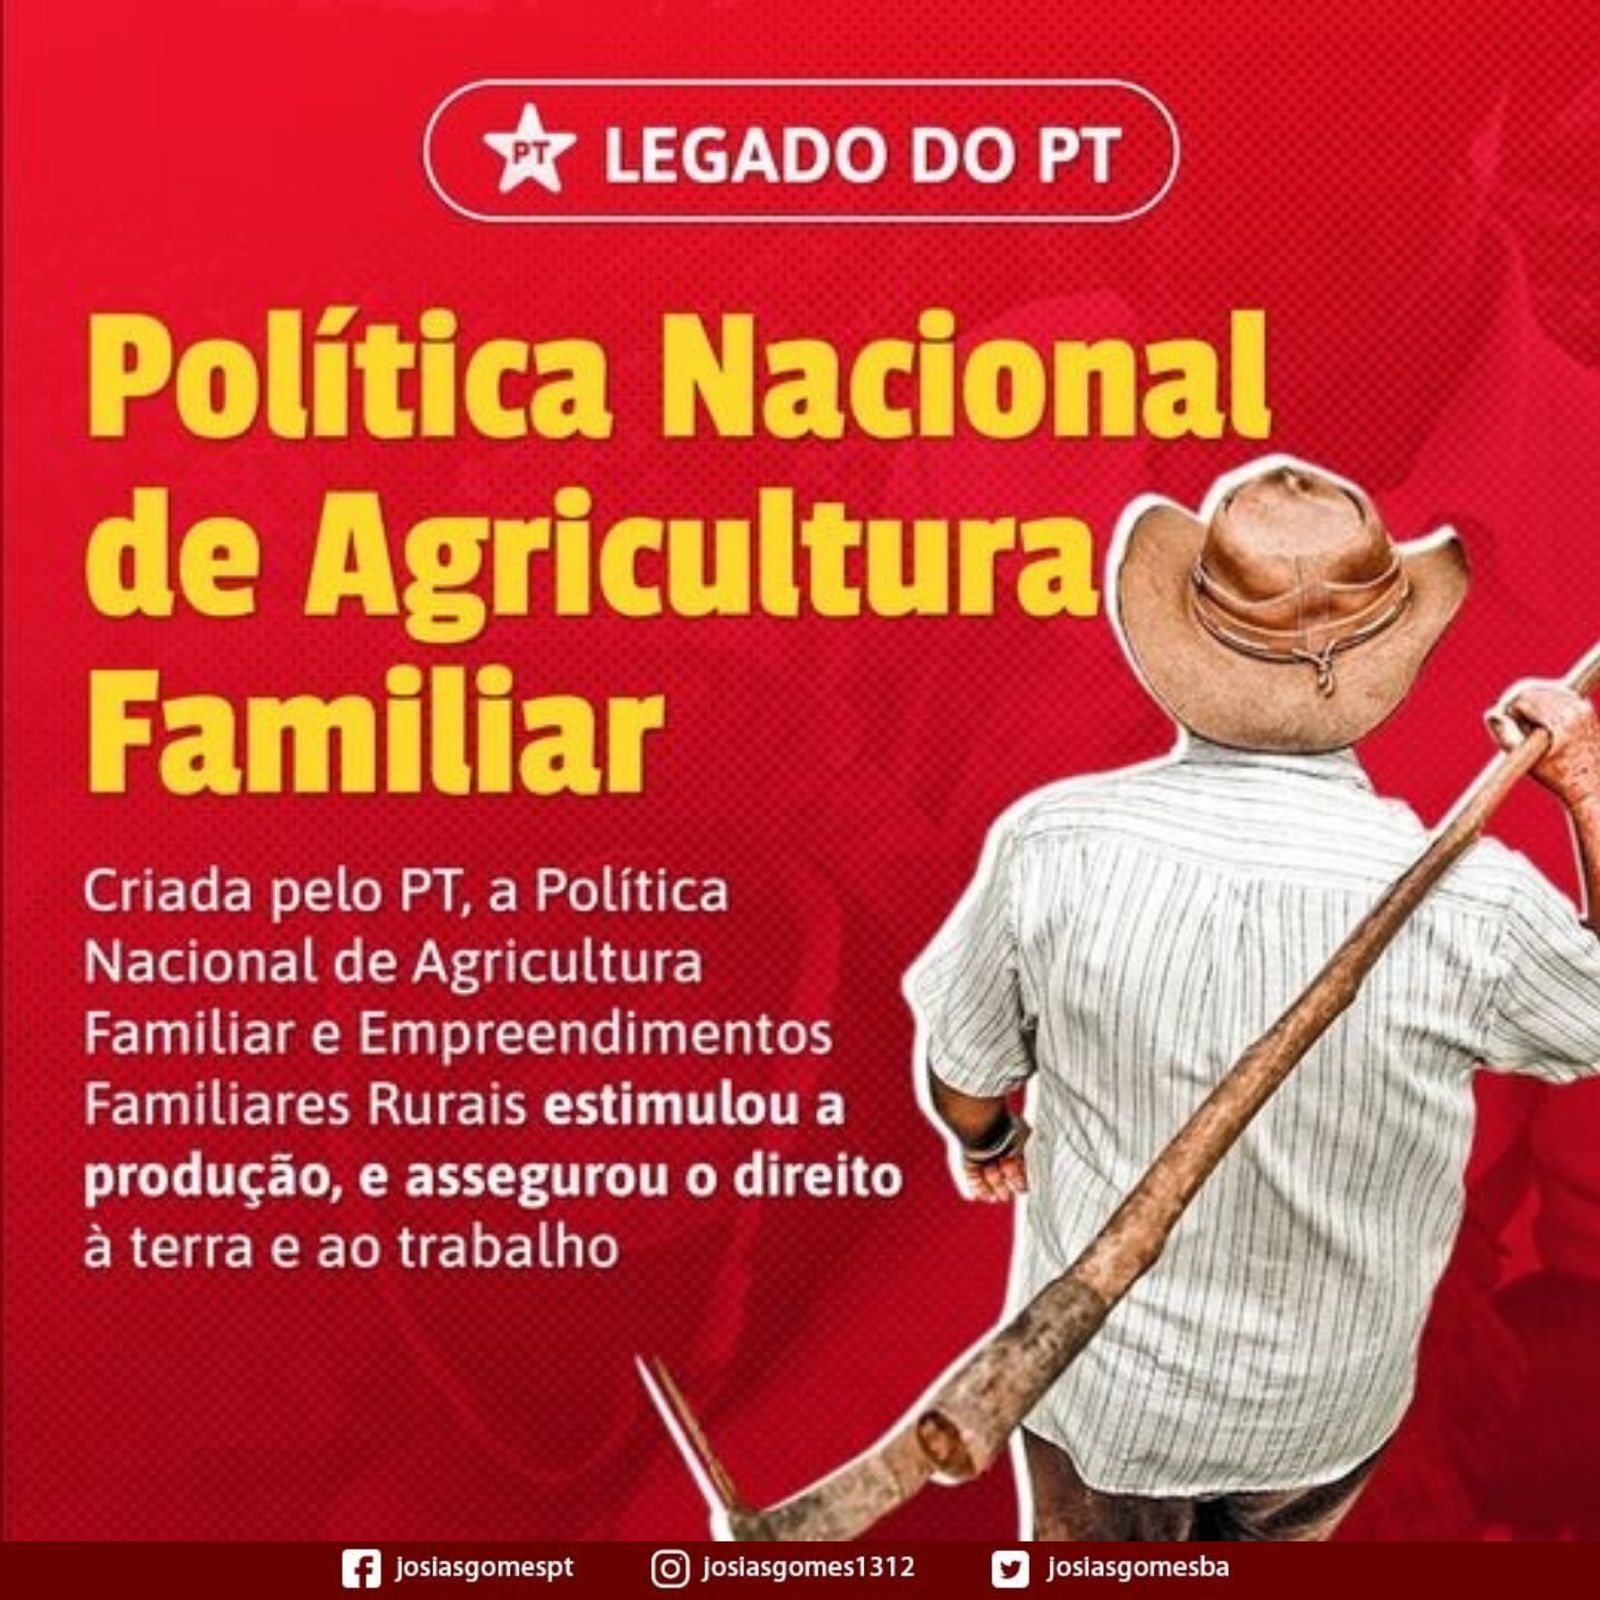 Política Nacional De Agricultura Familiar é Mais Um Legado Do PT!